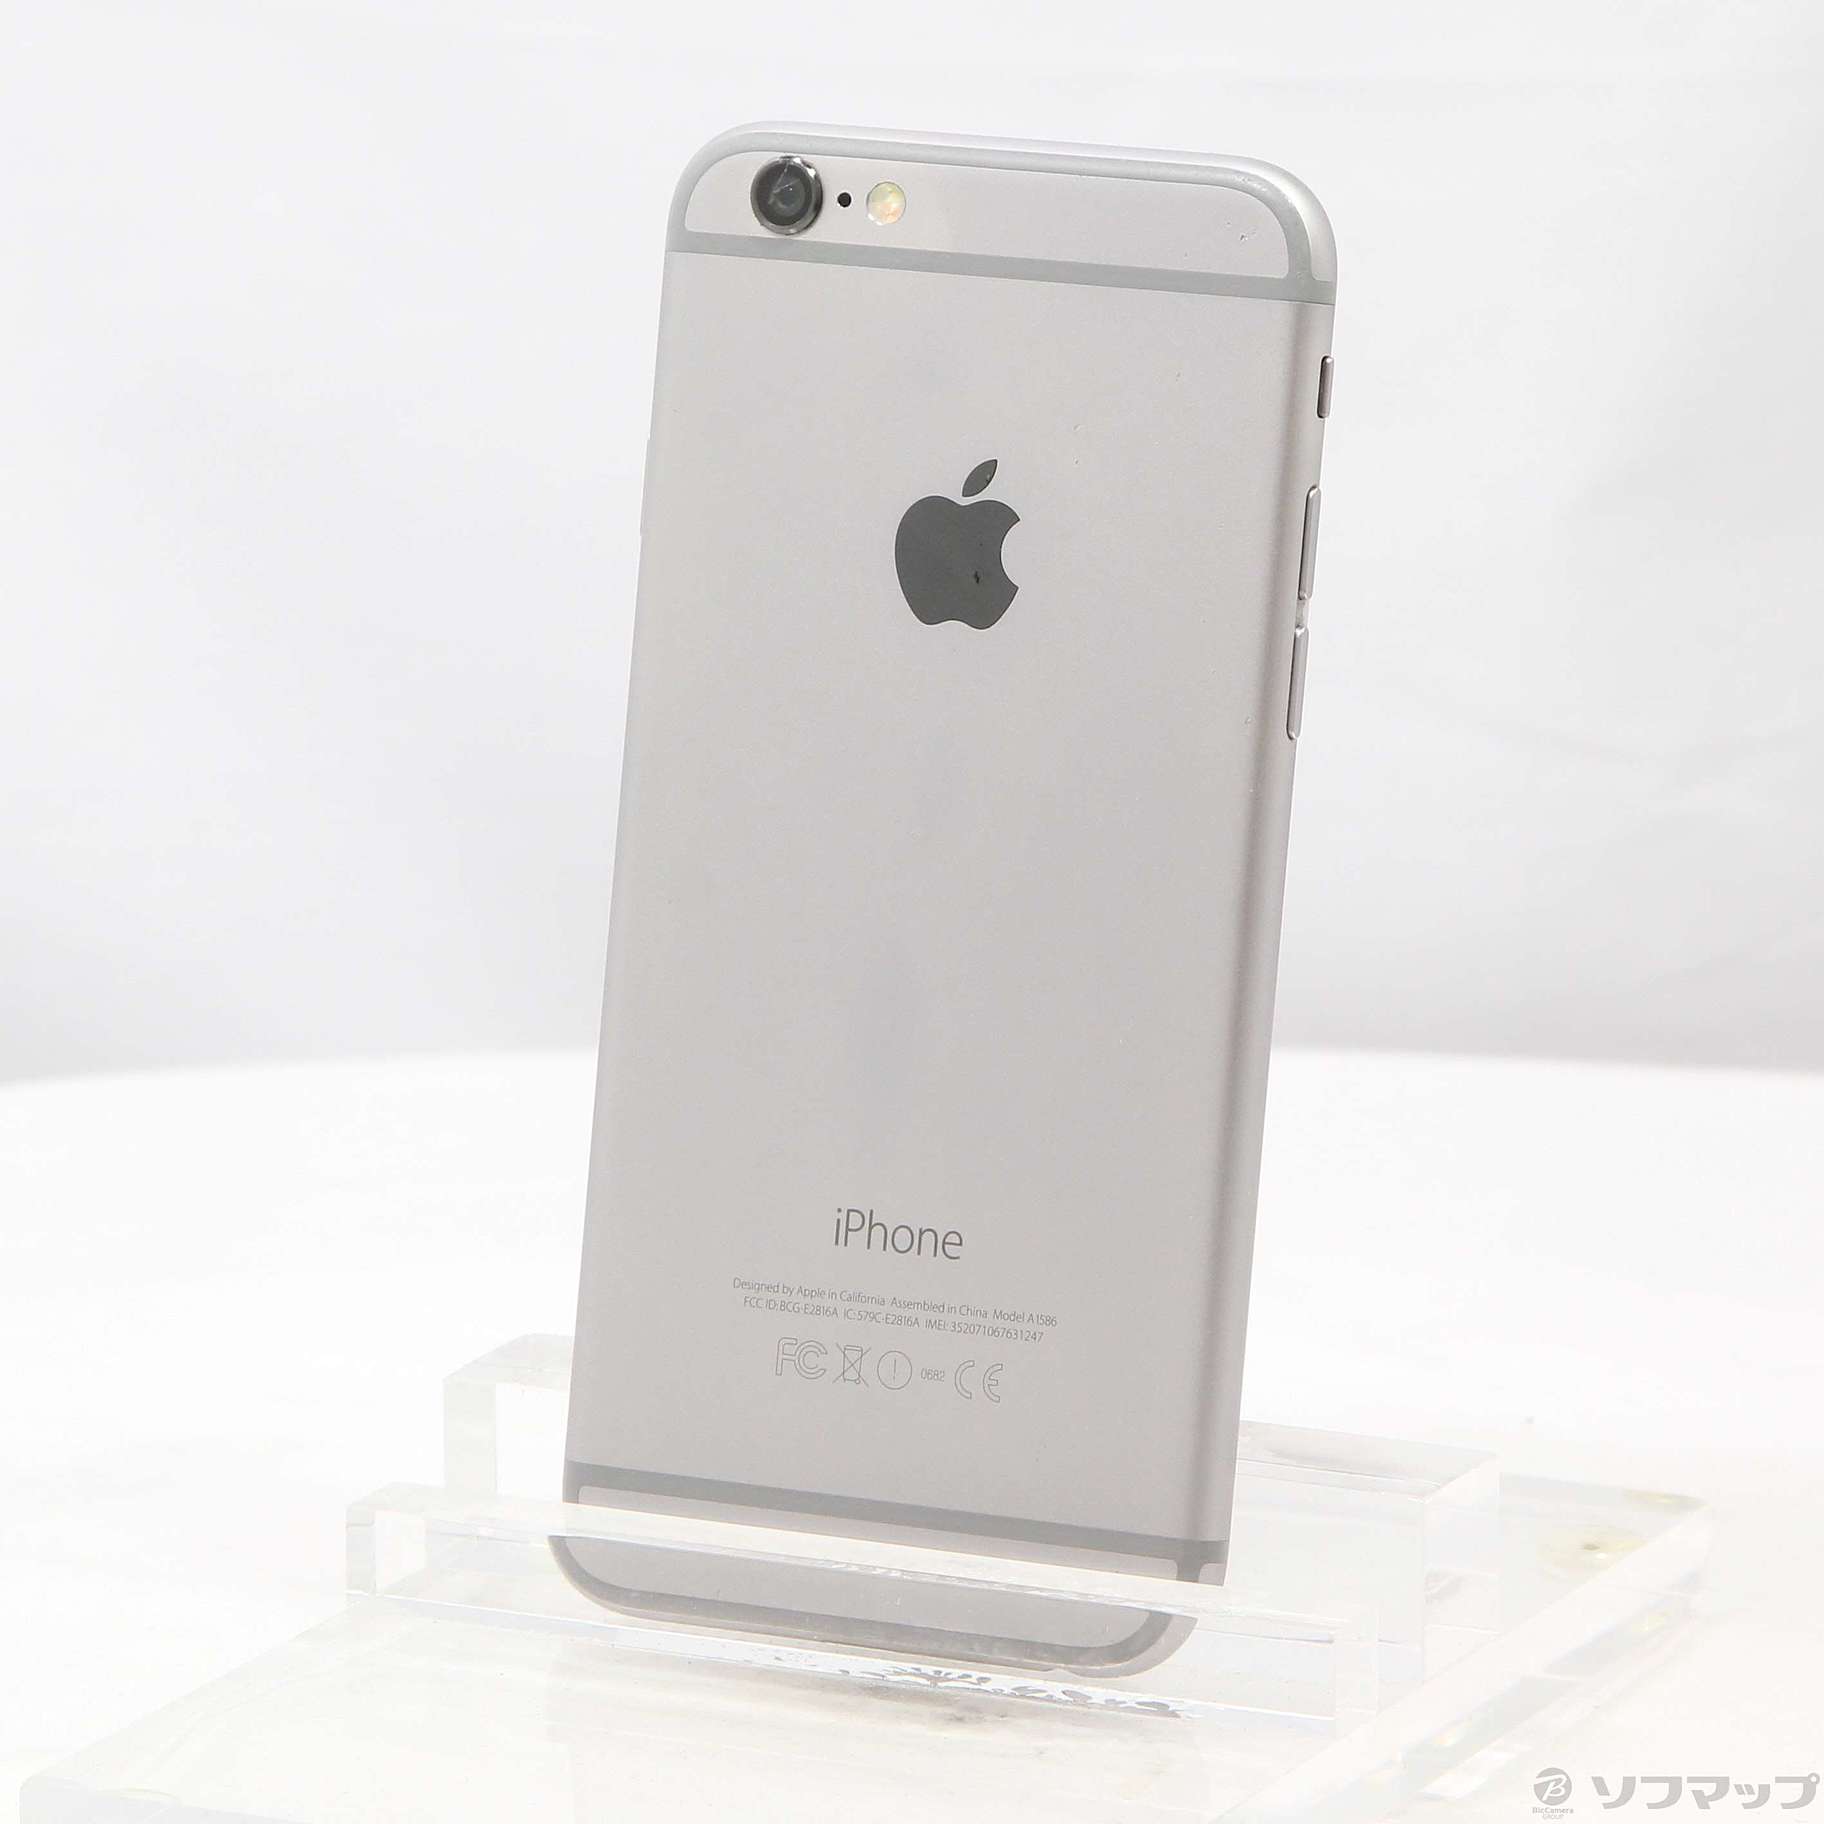 Apple iPhone 64GB A1586 MG4F2J A